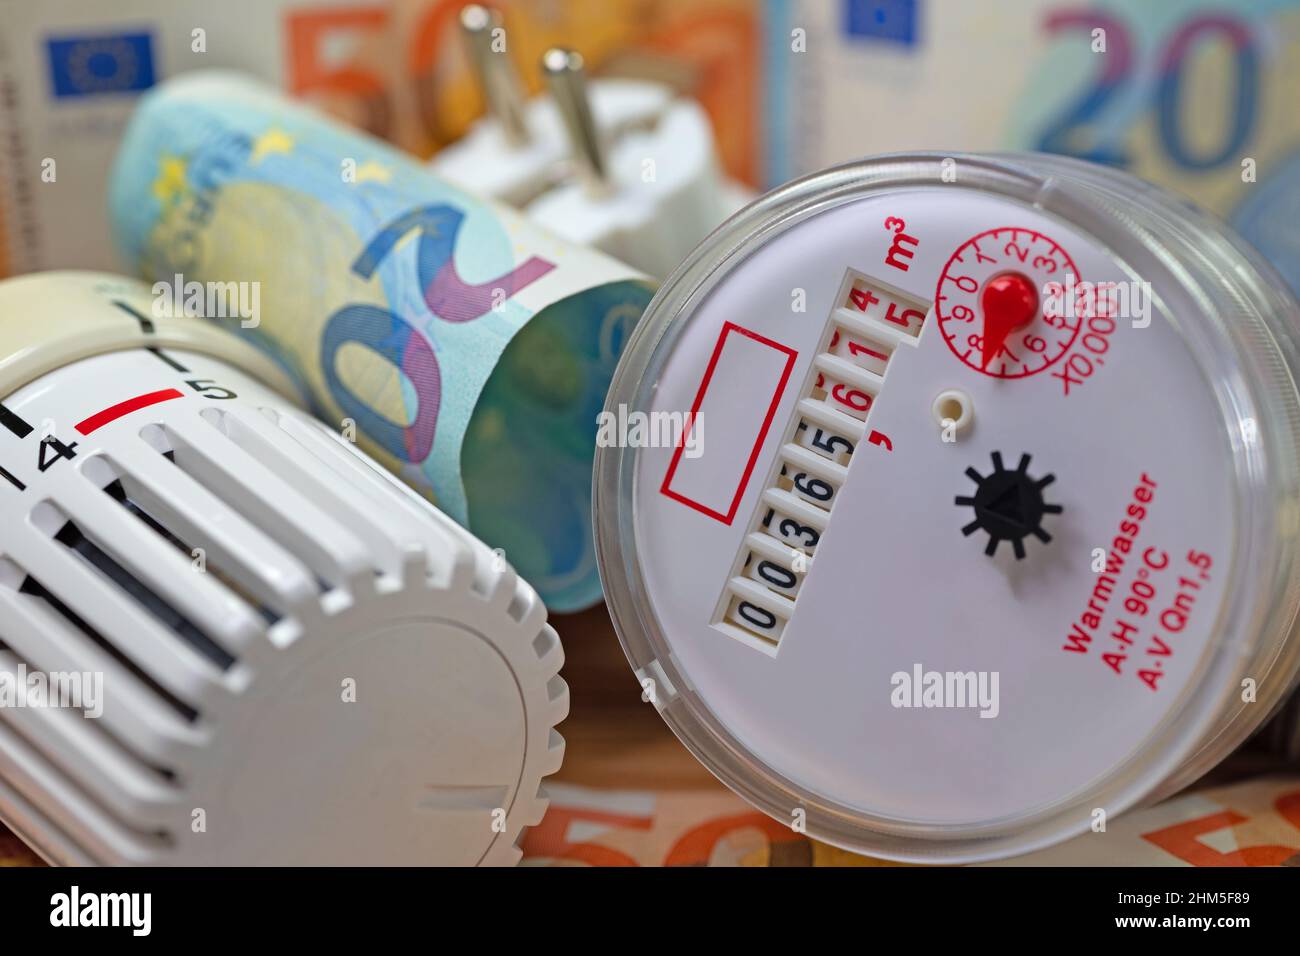 Le compteur d'eau, le thermostat et les billets symbolisent les coûts de location supplémentaires Banque D'Images